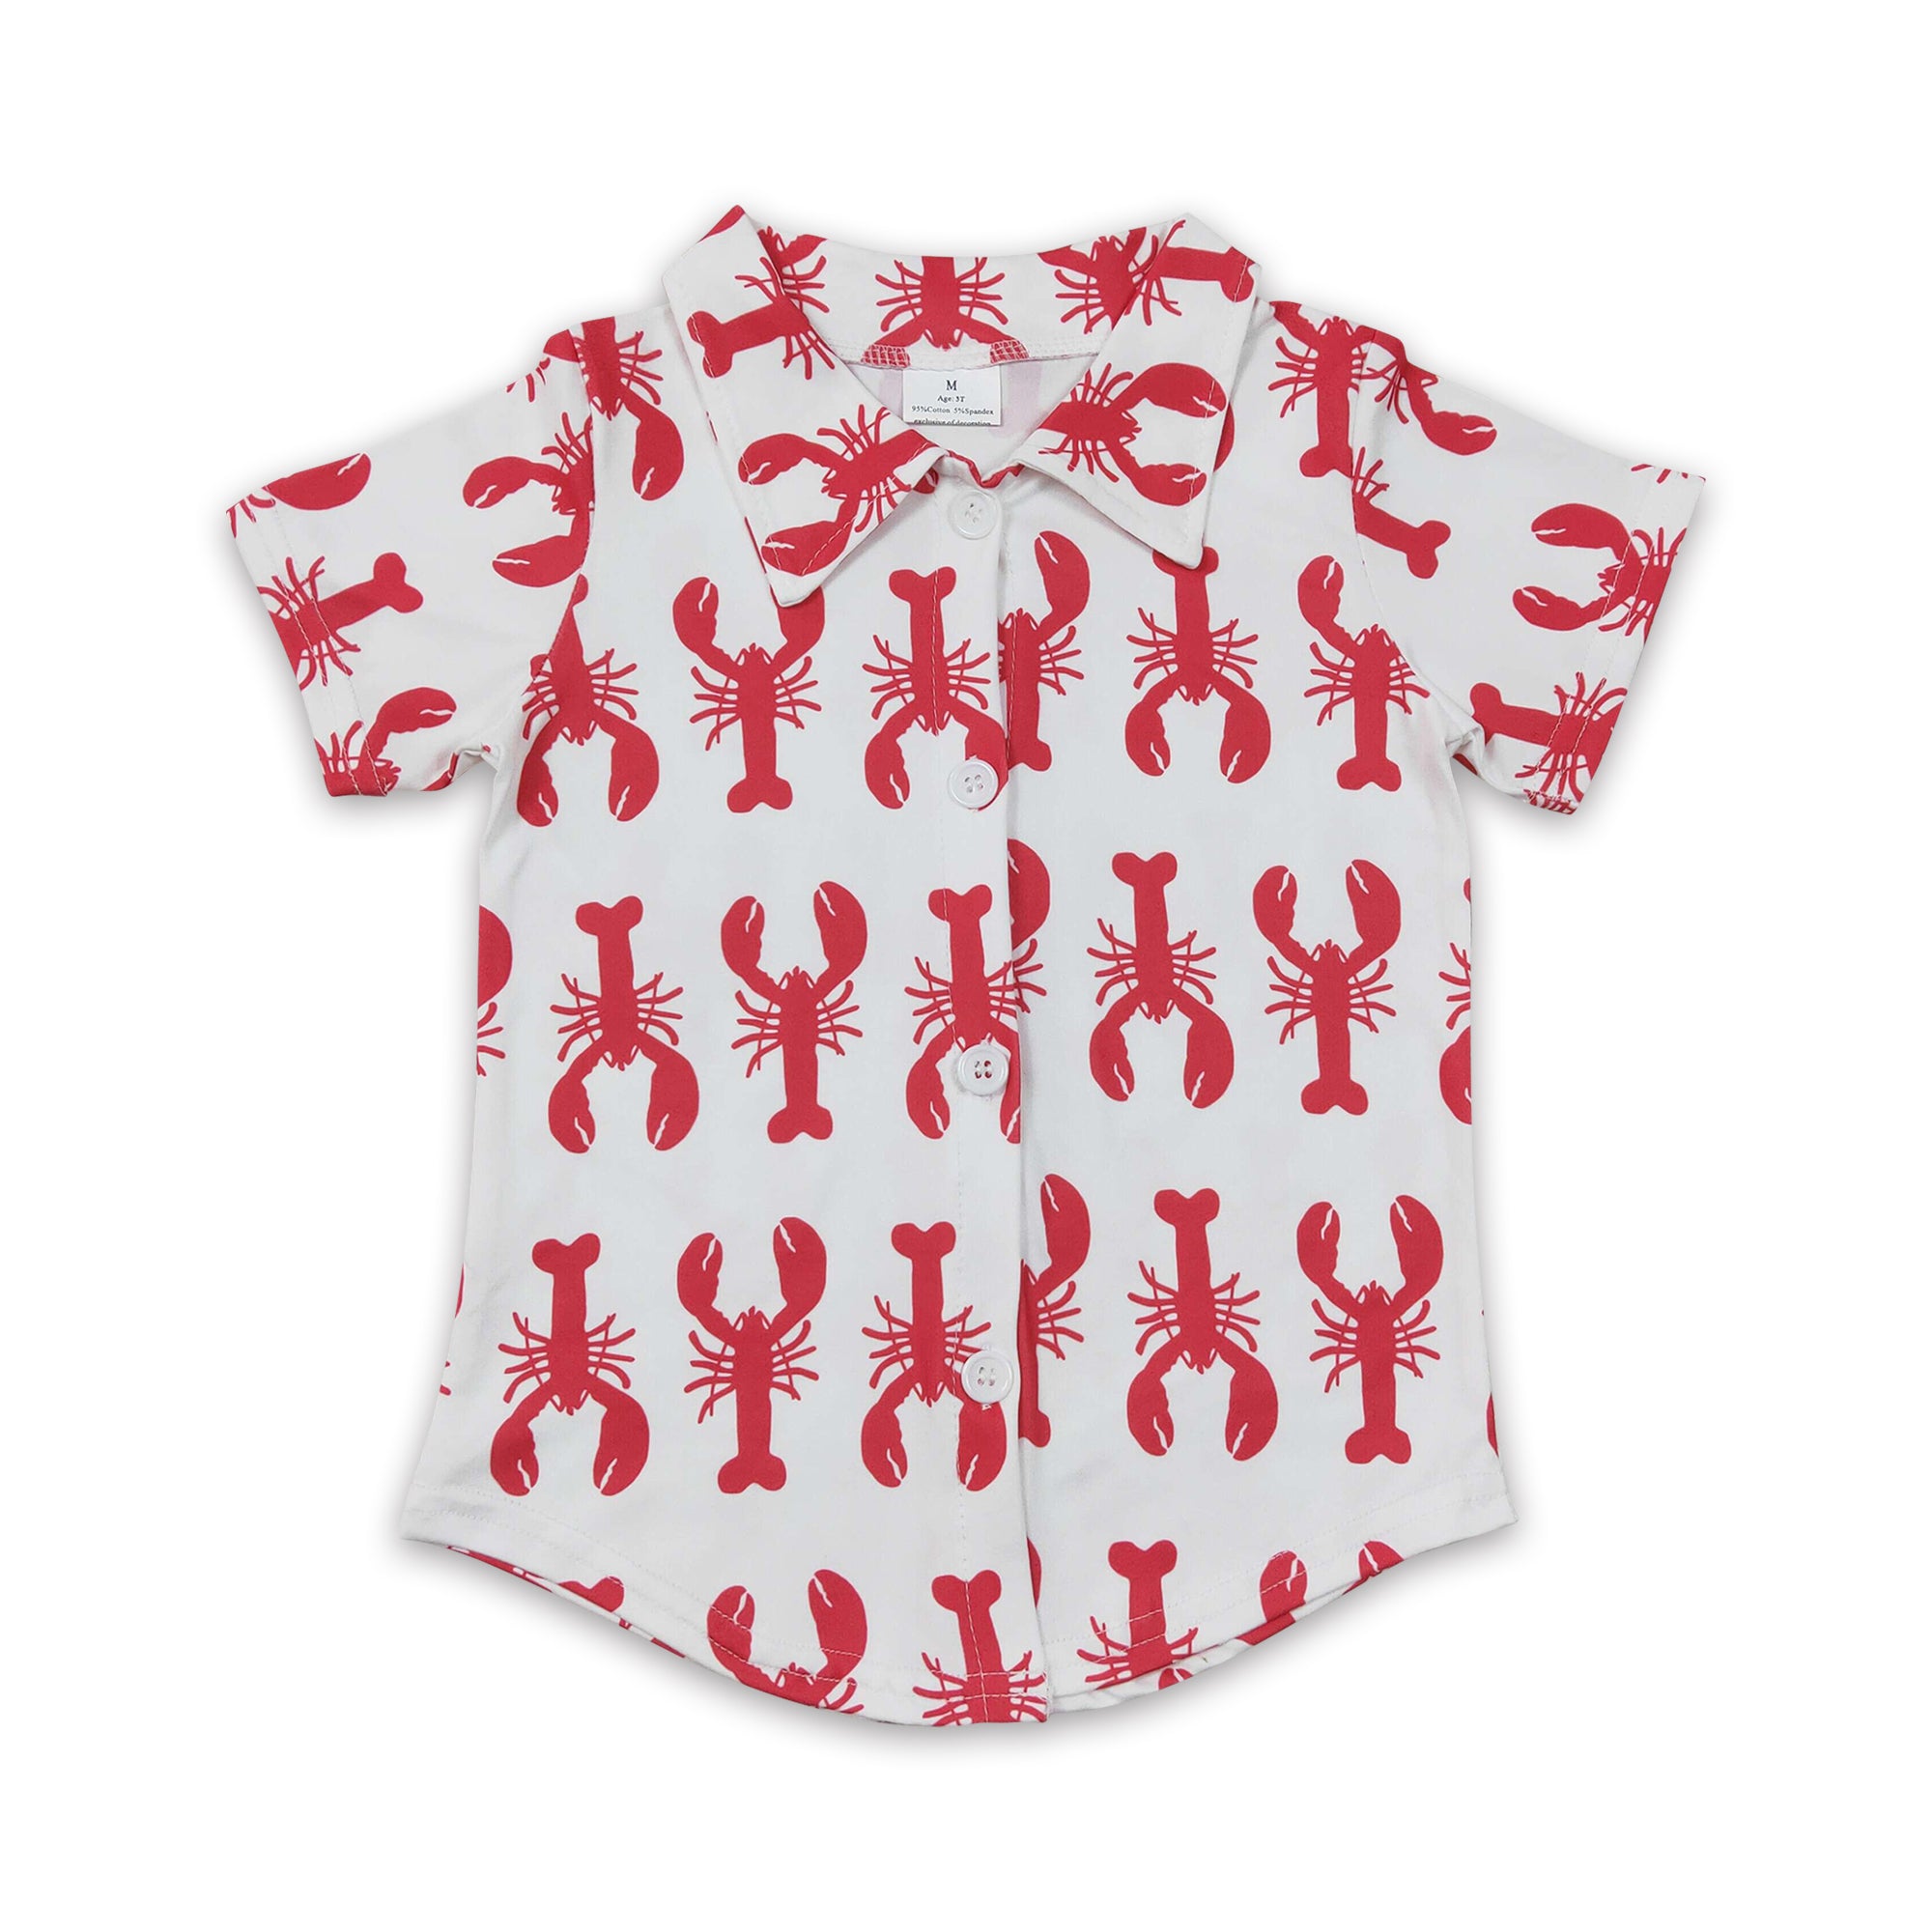 BT0161 baby boy clothes crawfish summer tshirt